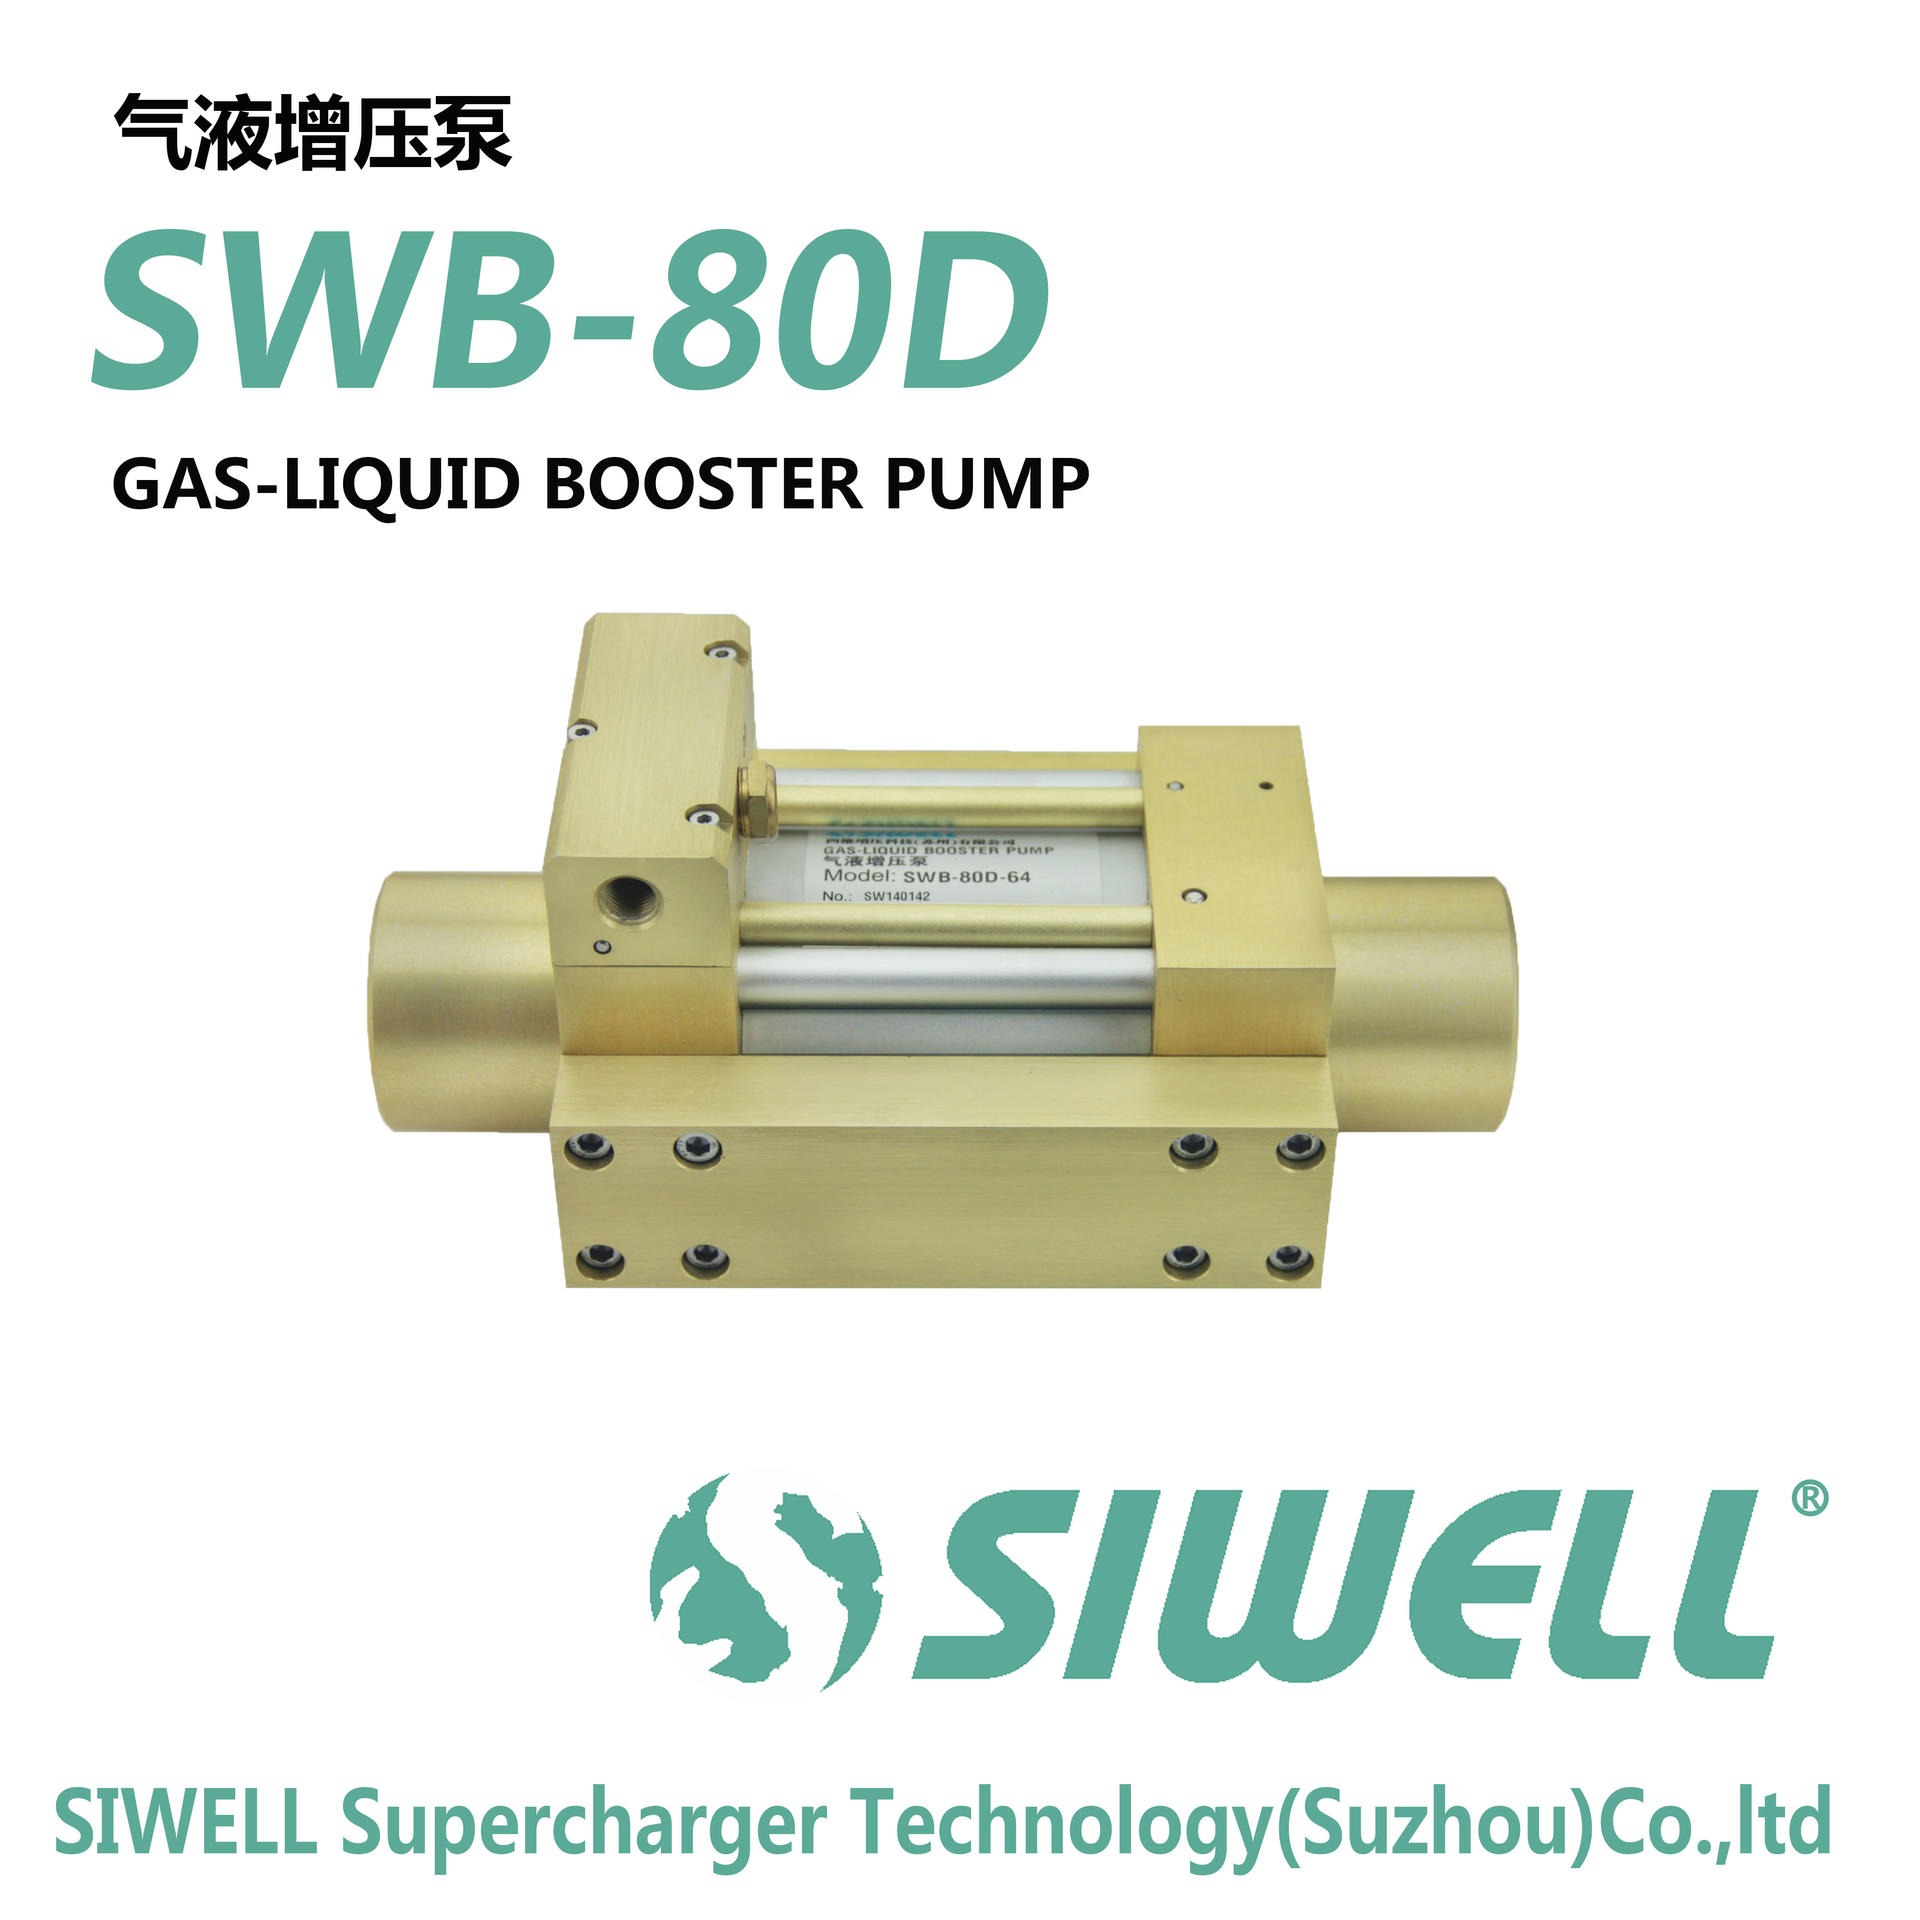 气液增压泵 液体驱动高压泵 液体增压器，液体高压驱动泵